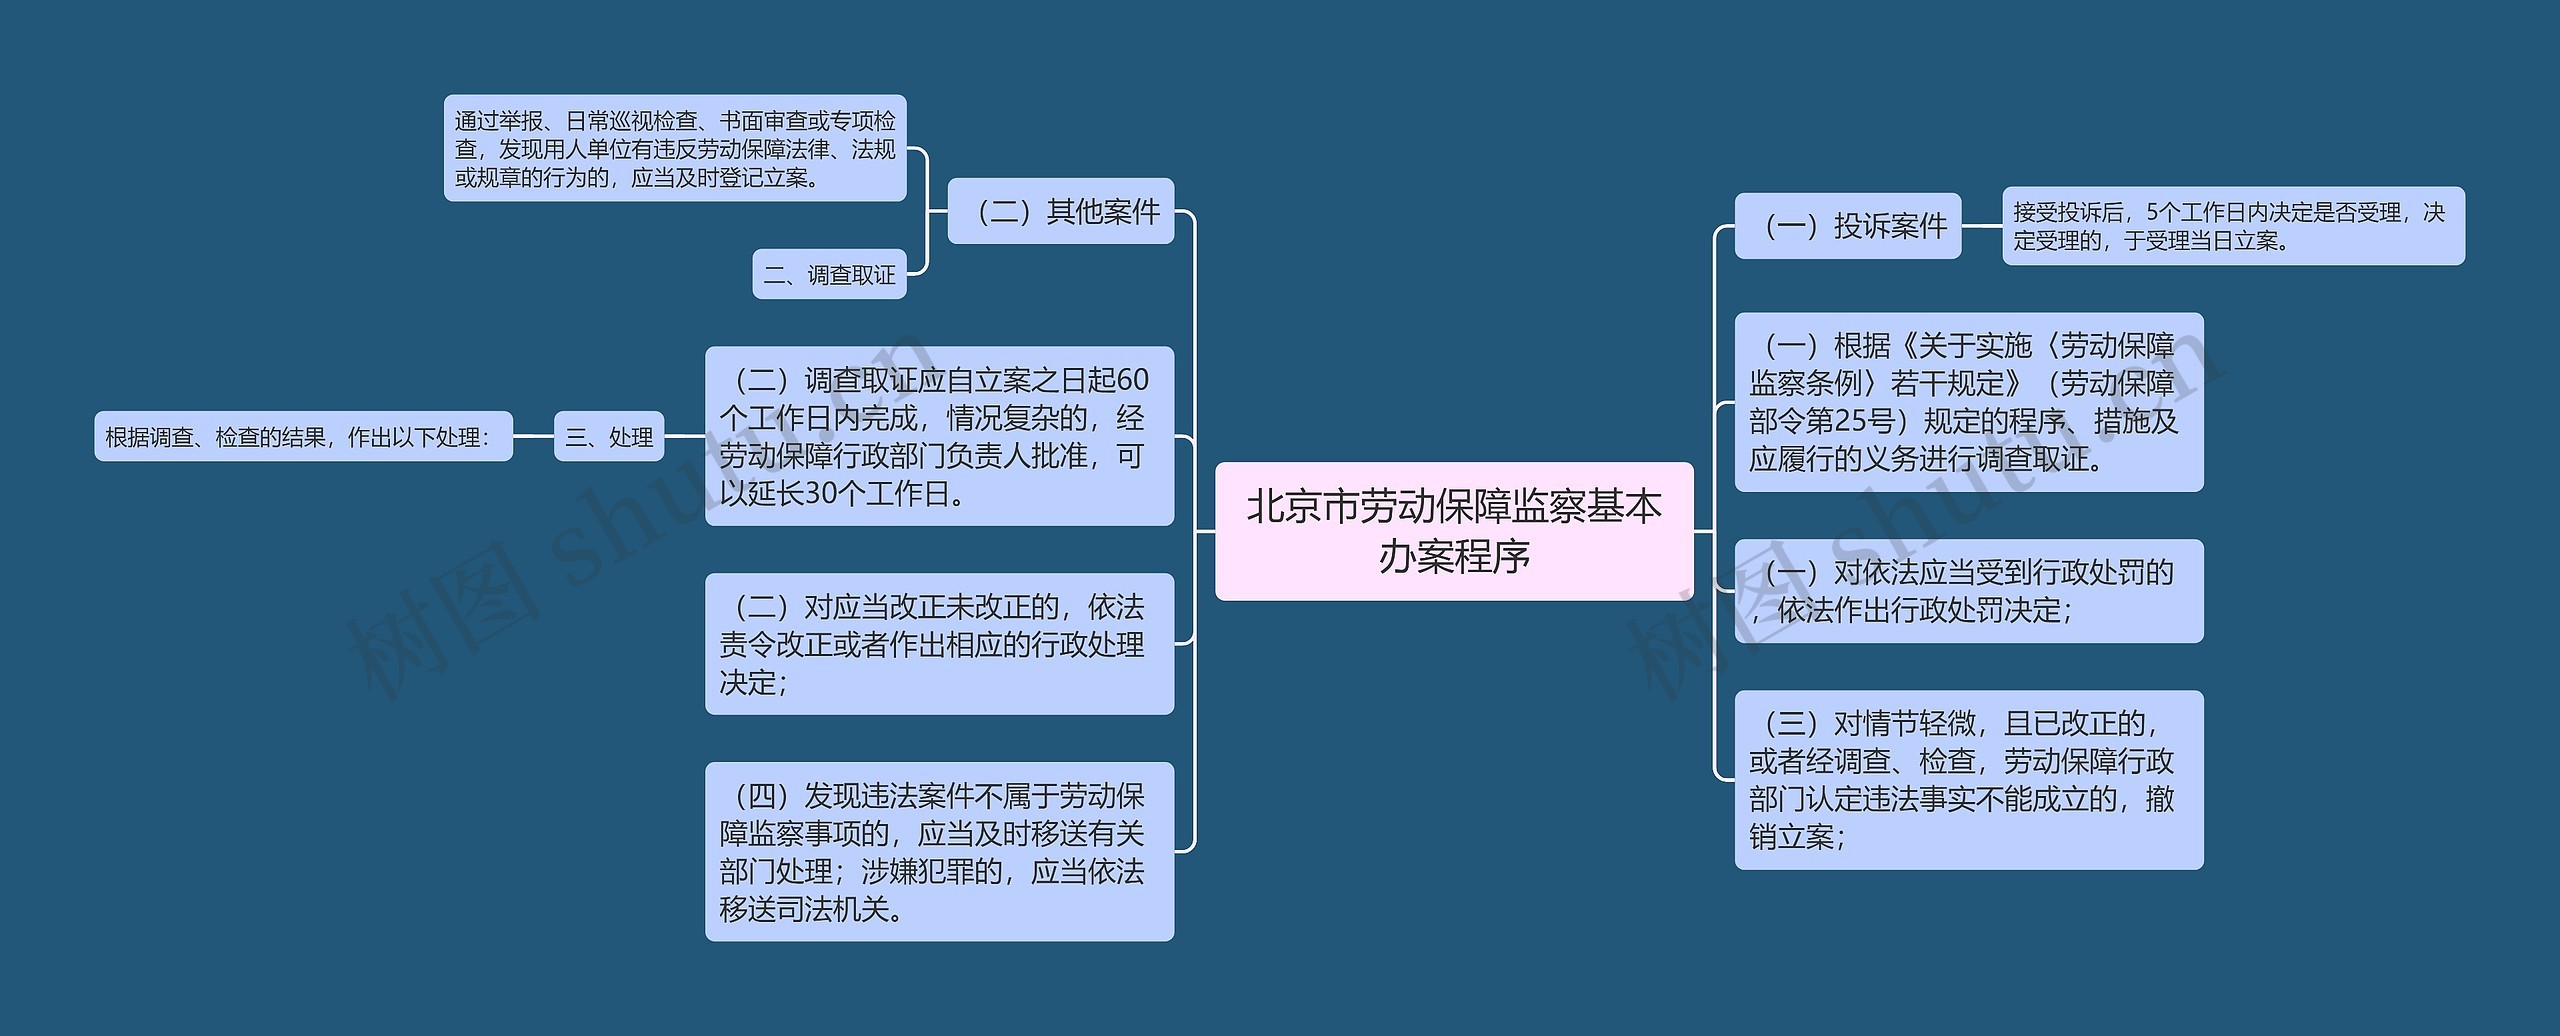 北京市劳动保障监察基本办案程序